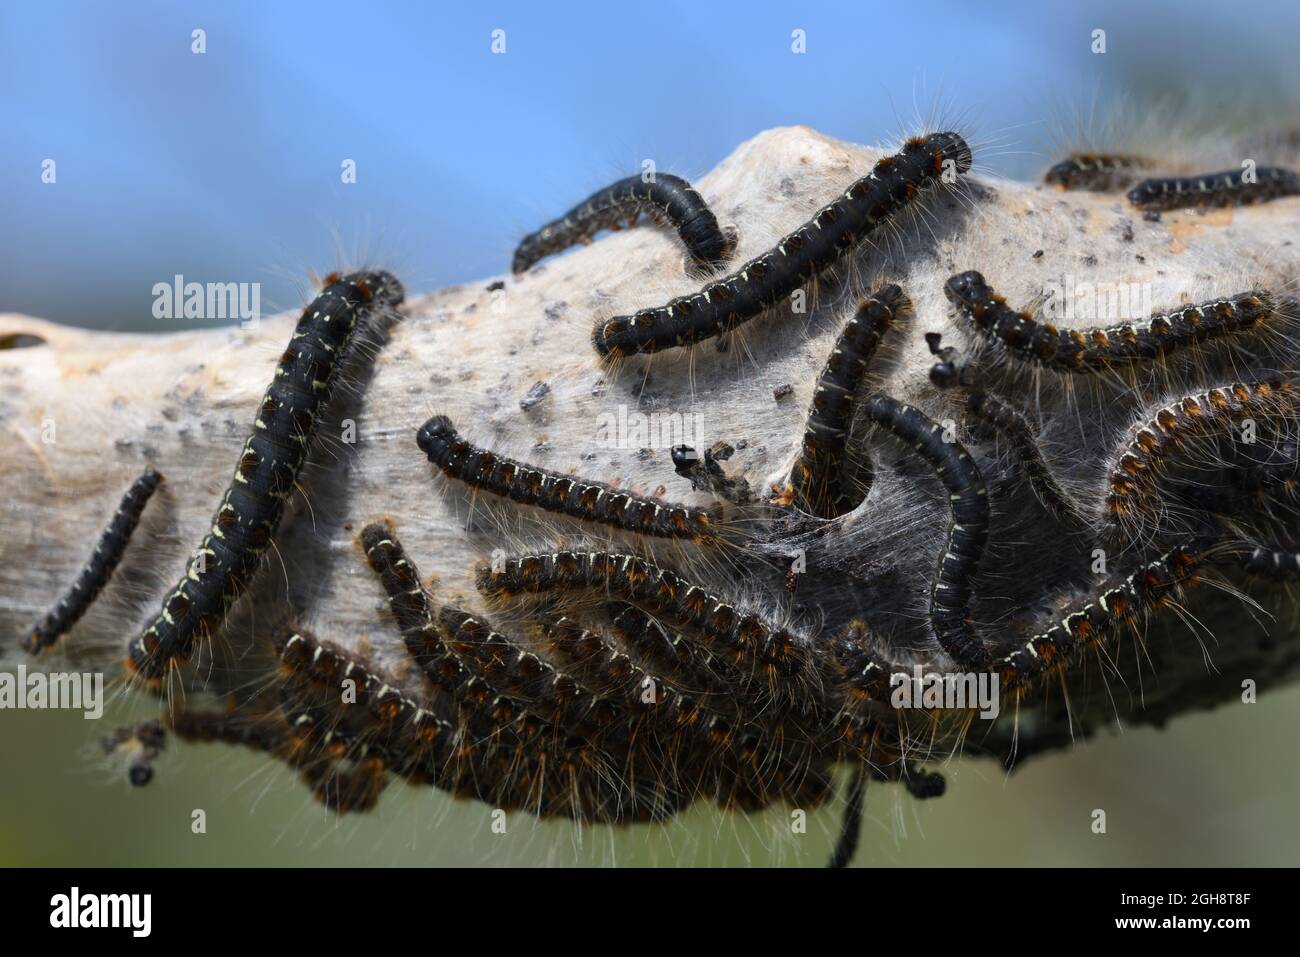 Gruppo o grappolo di Caterpilastri processari del Pino della Moth processaria del Pino, Thaumetopoea pityocampa, emergente da Silken Nest Foto Stock